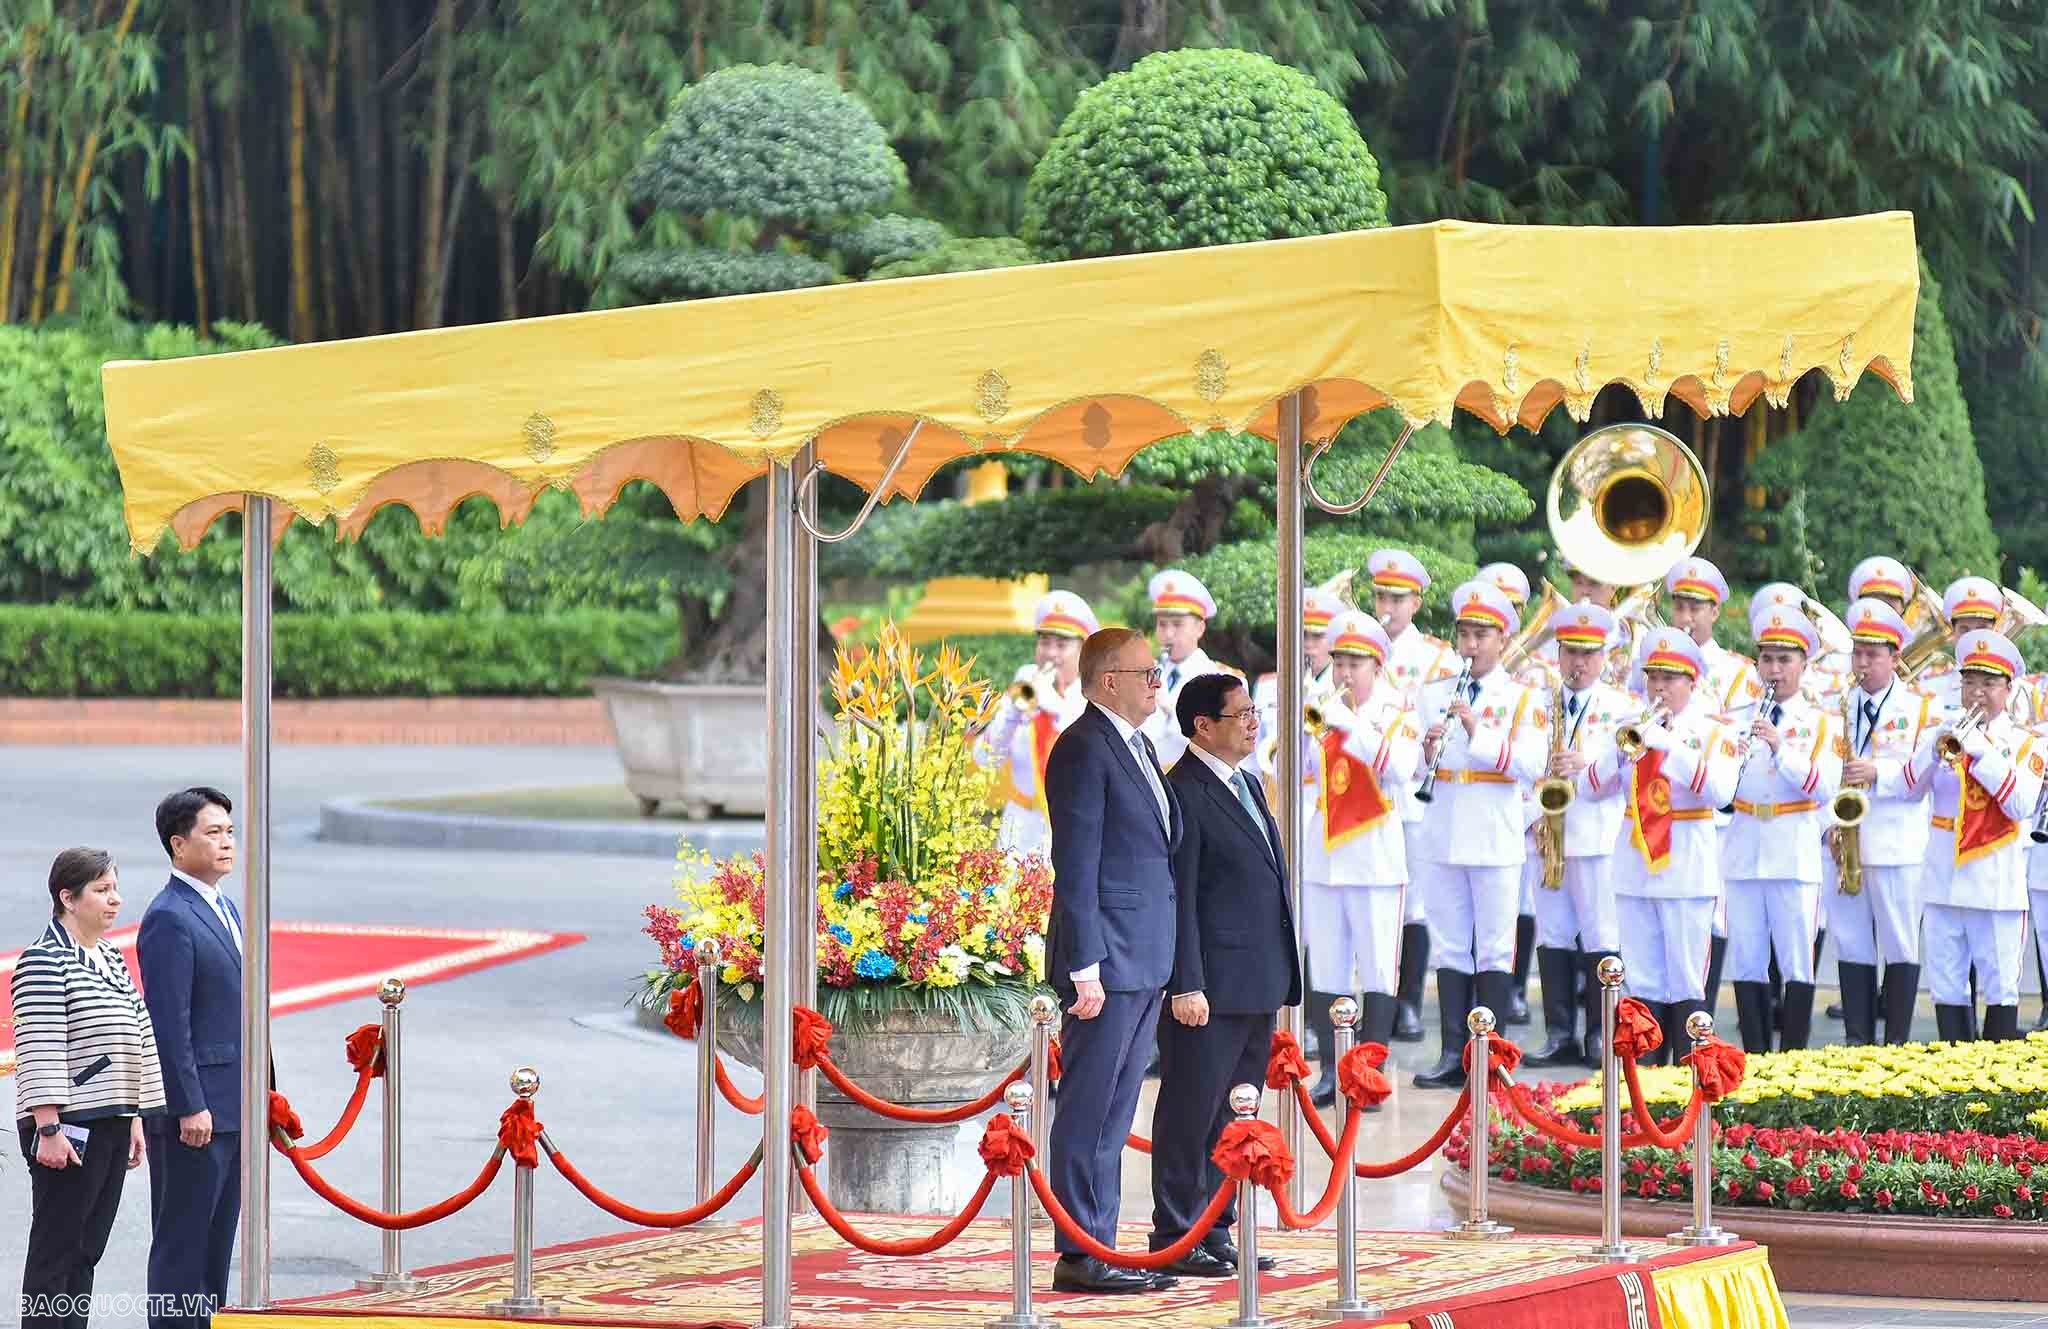 Đây là chuyến thăm chính thức đầu tiên của ông Anthony Albanese tới Việt Nam kể từ khi nhậm chức và chỉ 2 tháng sau chuyến thăm cấp Nhà nước của Toàn quyền Australia David Hurley, thể hiện sự coi trọng của Australia trong quan hệ với Việt Nam.